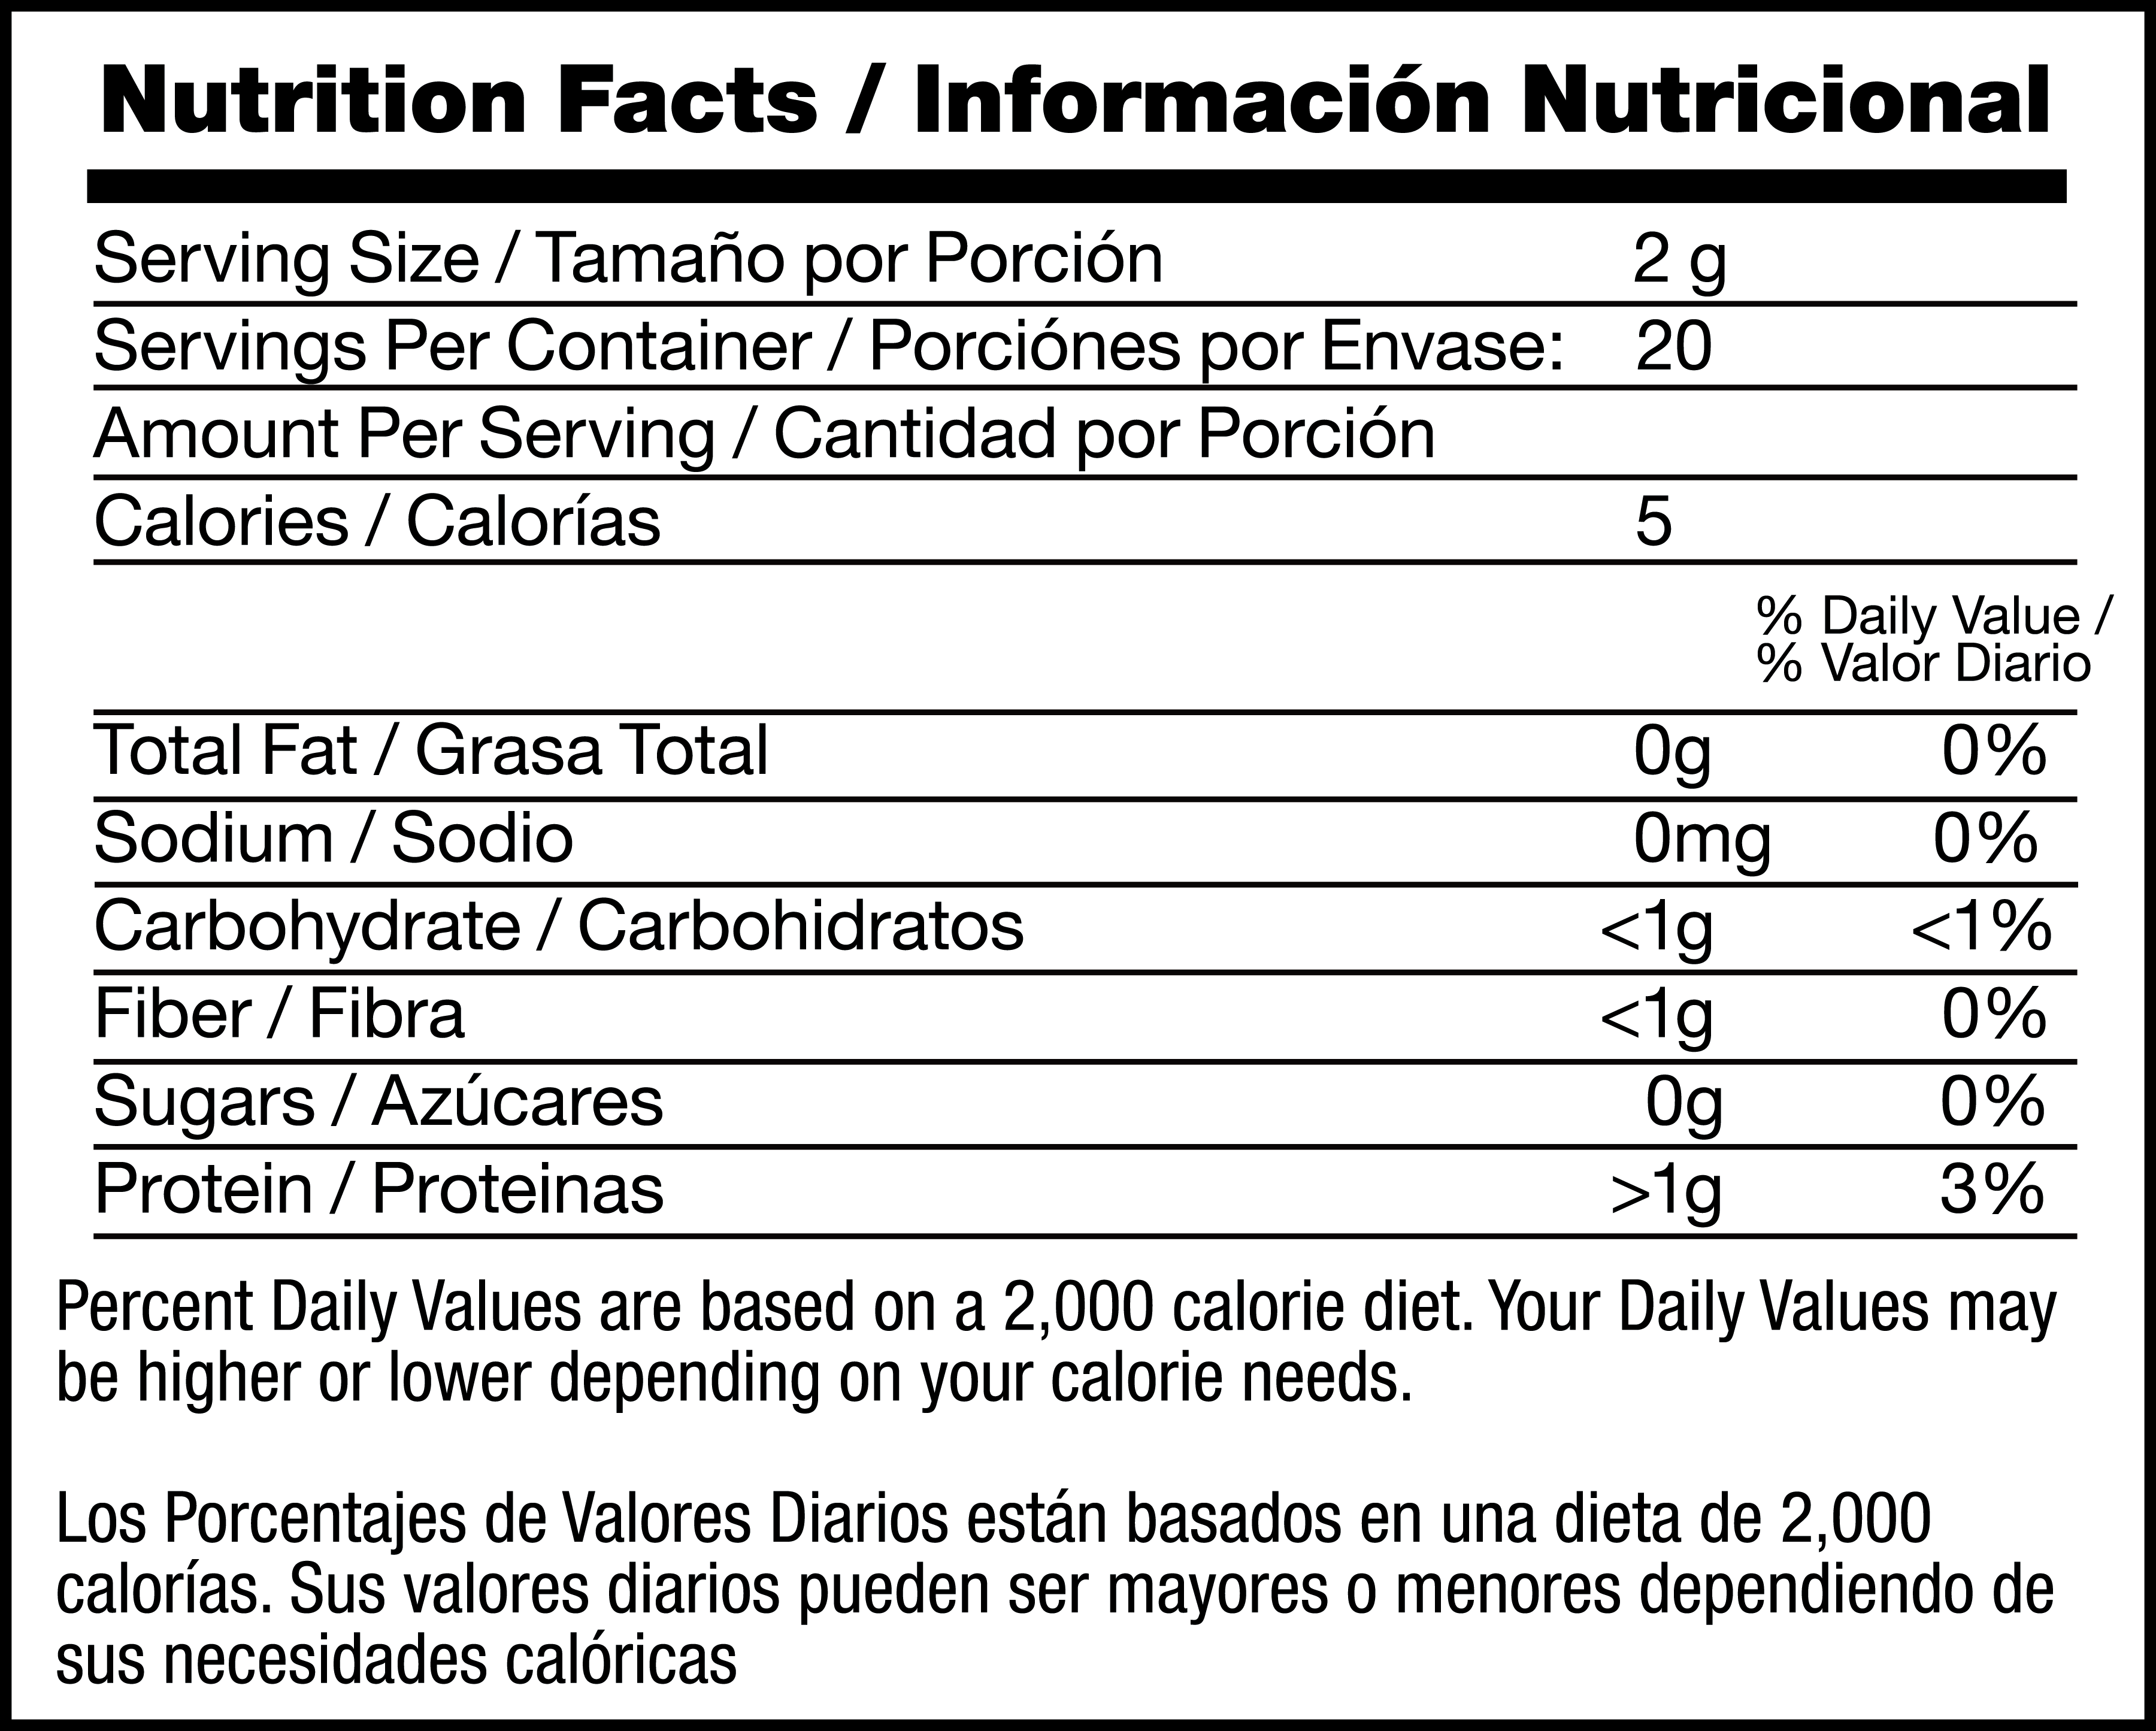 Té Negro (Black Tea) nutrition facts